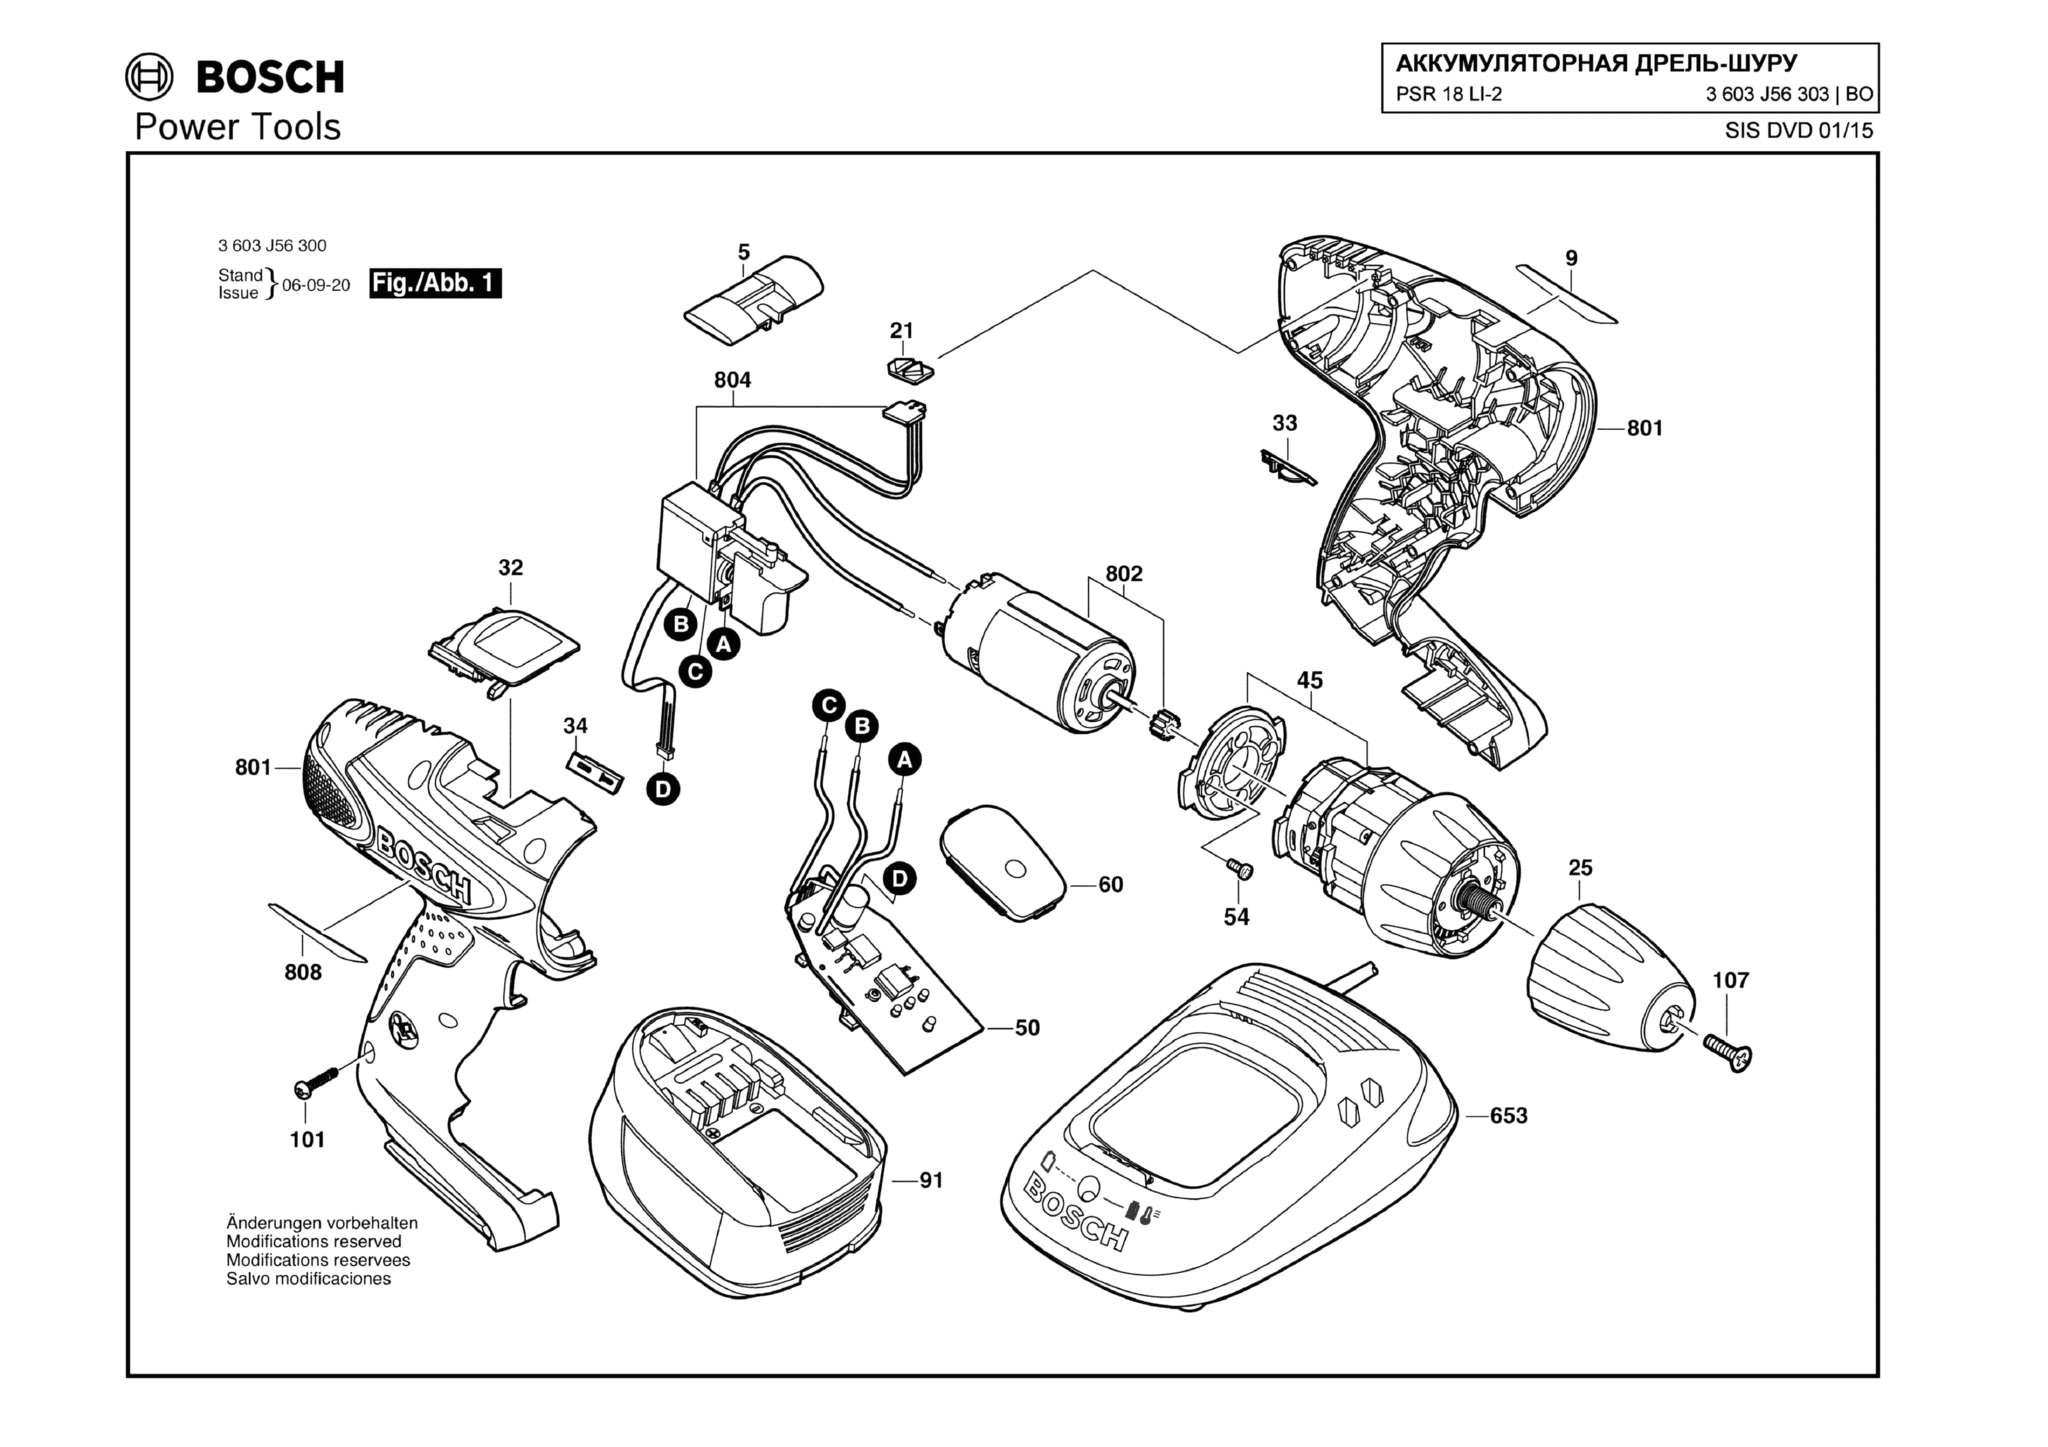 Запчасти, схема и деталировка Bosch PSR 18 LI-2 (ТИП 3603J56303)